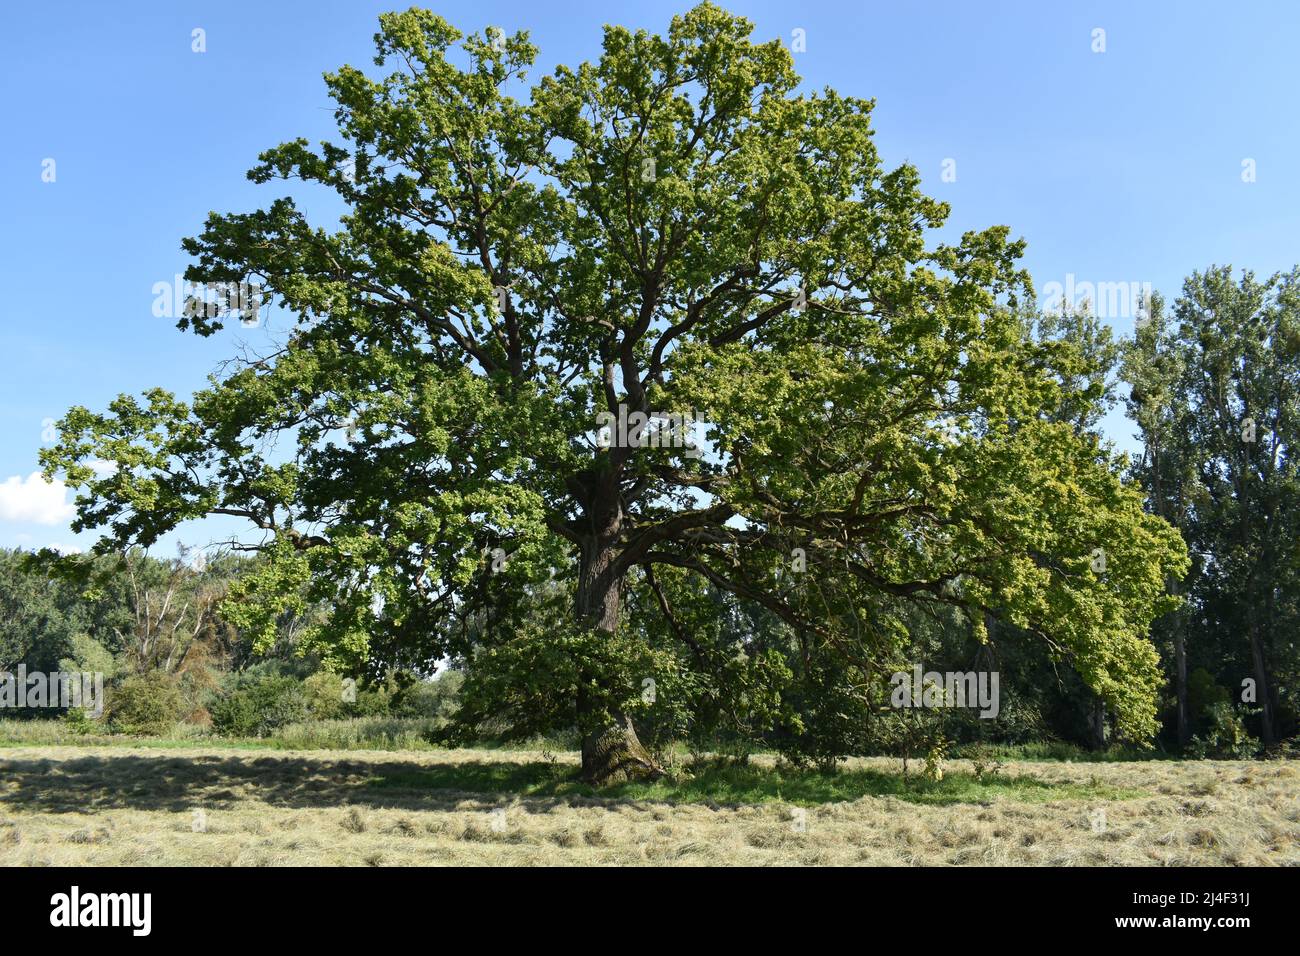 Baum, Eiche, Eichbaum, Sommer, blauer Himmel, alter Baum, Stärke, Alter Stock Photo